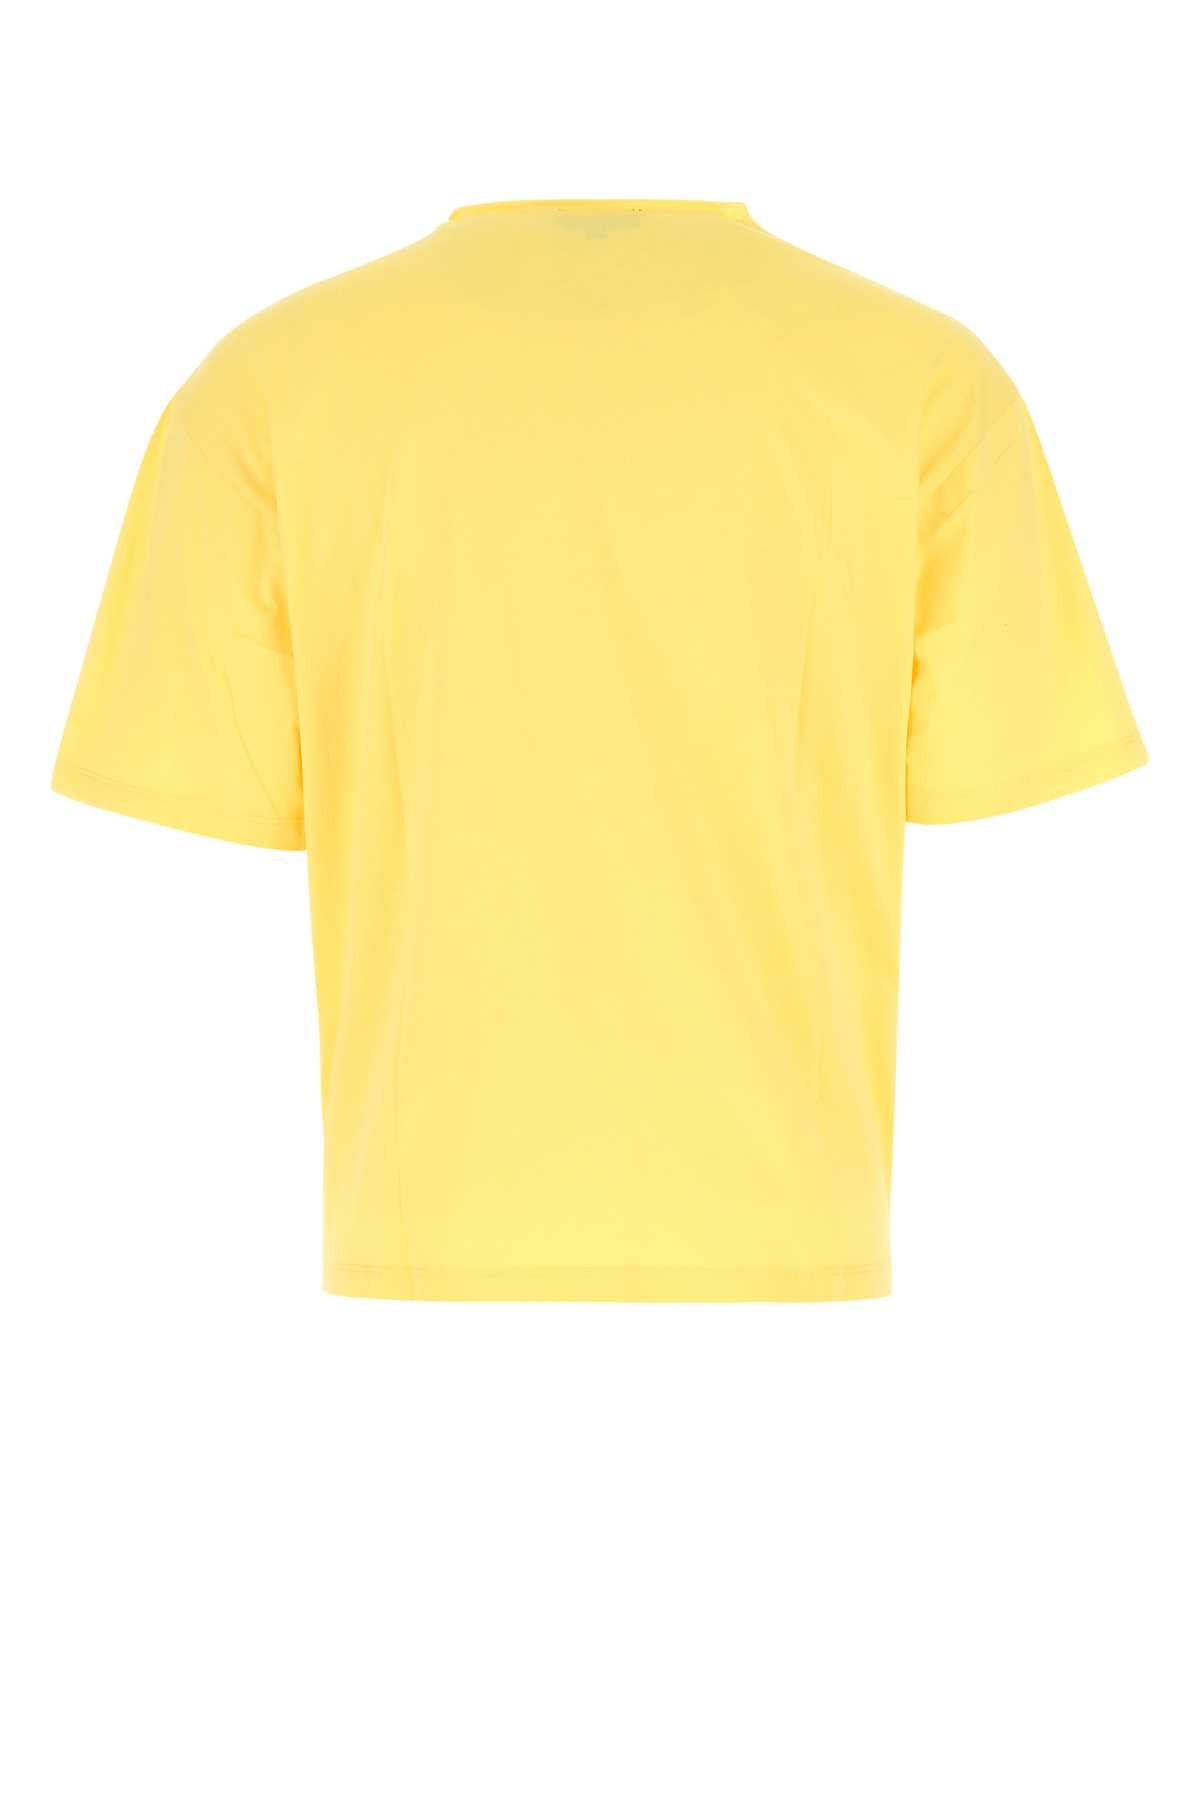 Apc Pastel Yellow Cotton T-shirt